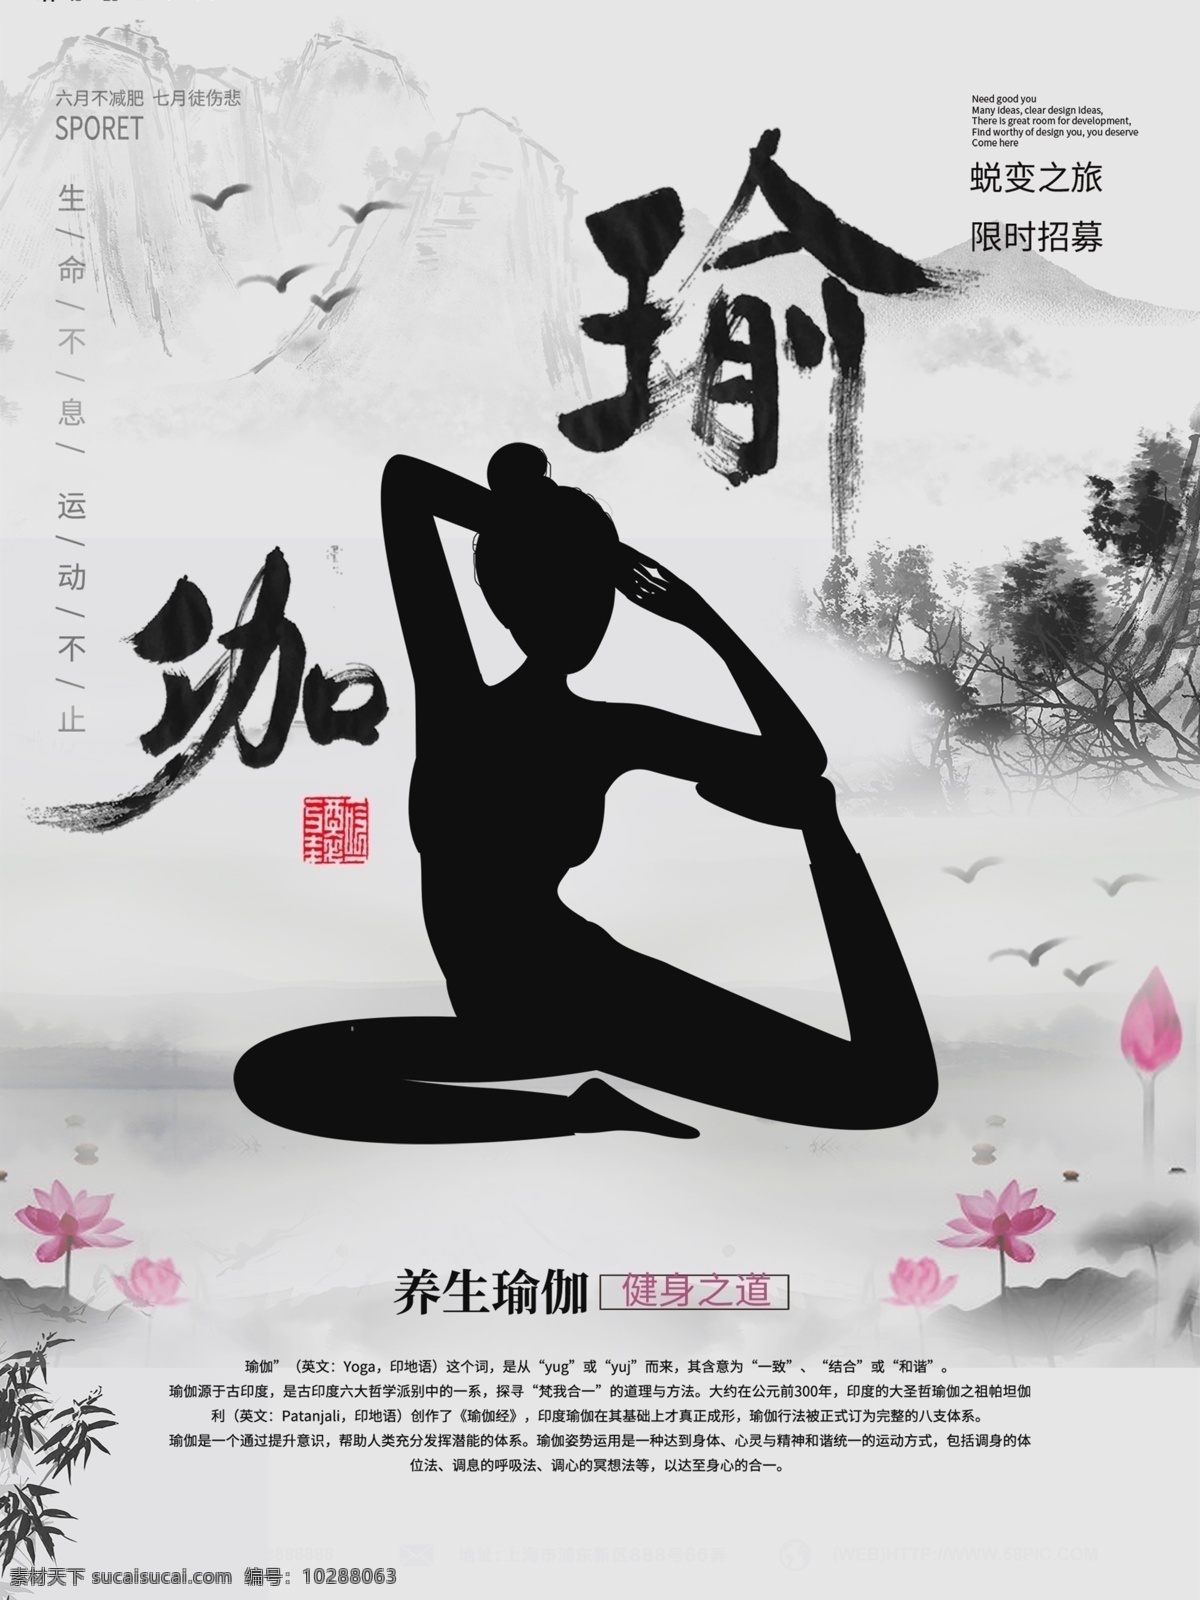 创意 瑜伽 课程 促销 海报 培训 优惠 招生 中国风 水墨 人物剪影 剪影 健身 分层